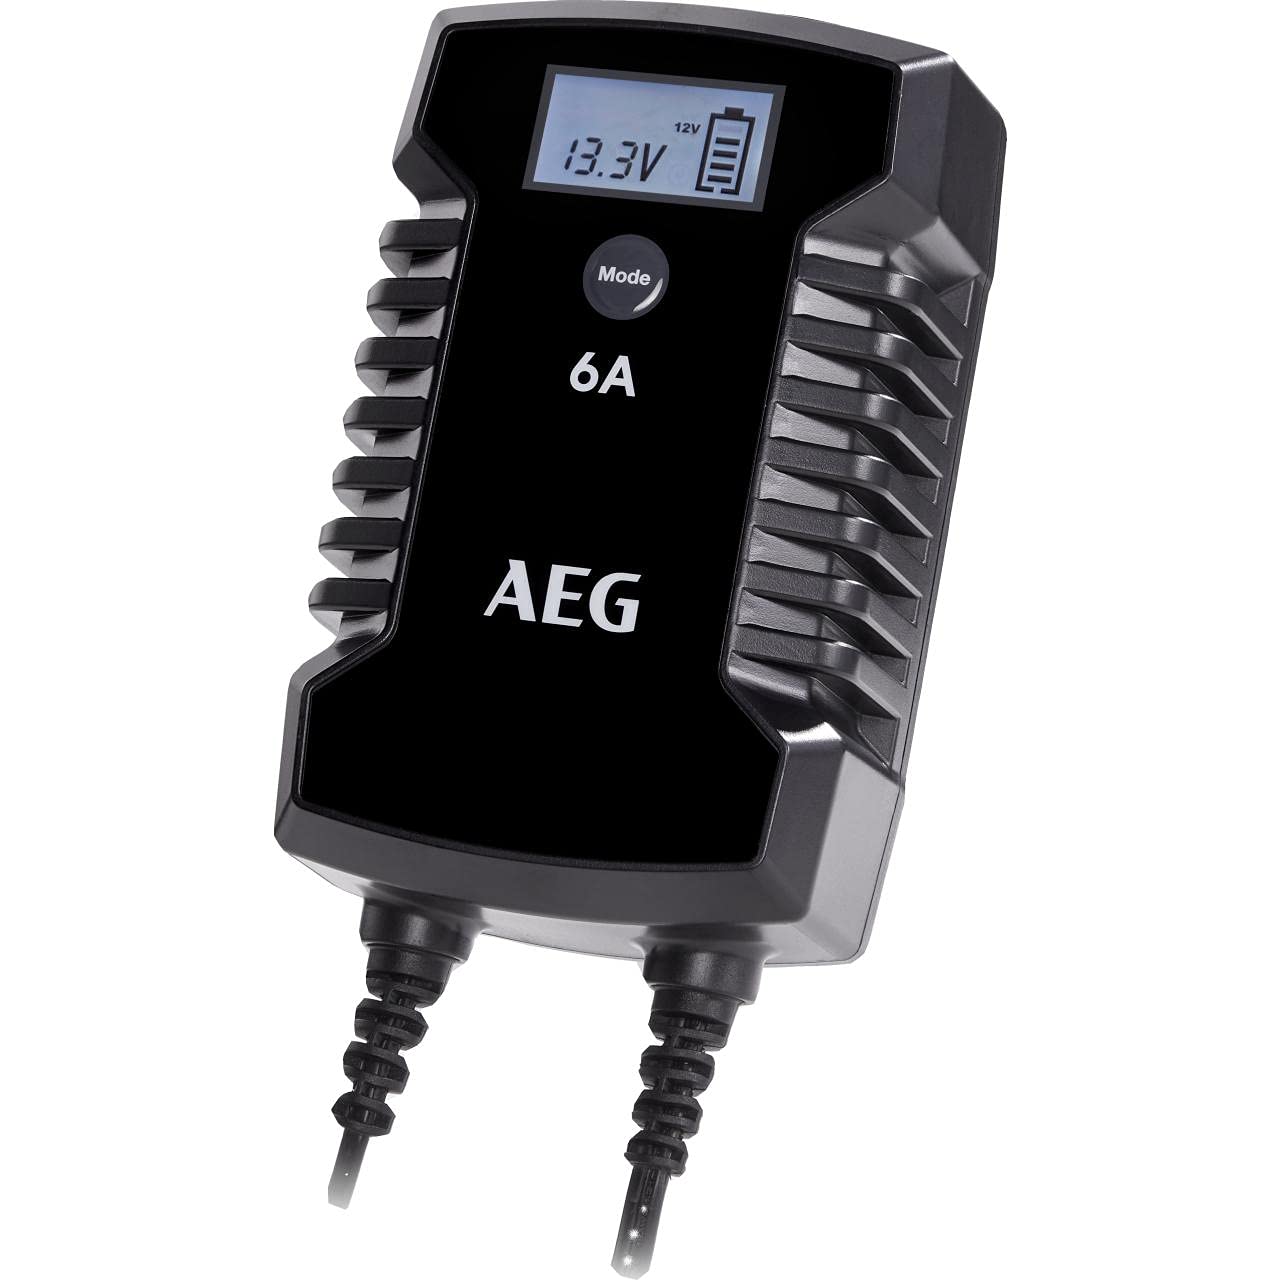 AEG Automotive 10617 Mikroprozessor-Ladegerät für Auto Batterie LD 6.0, 6 Ampere für 6/12 V, 7-HF Ladestufen, Autostartfunktion Komfortanschluss